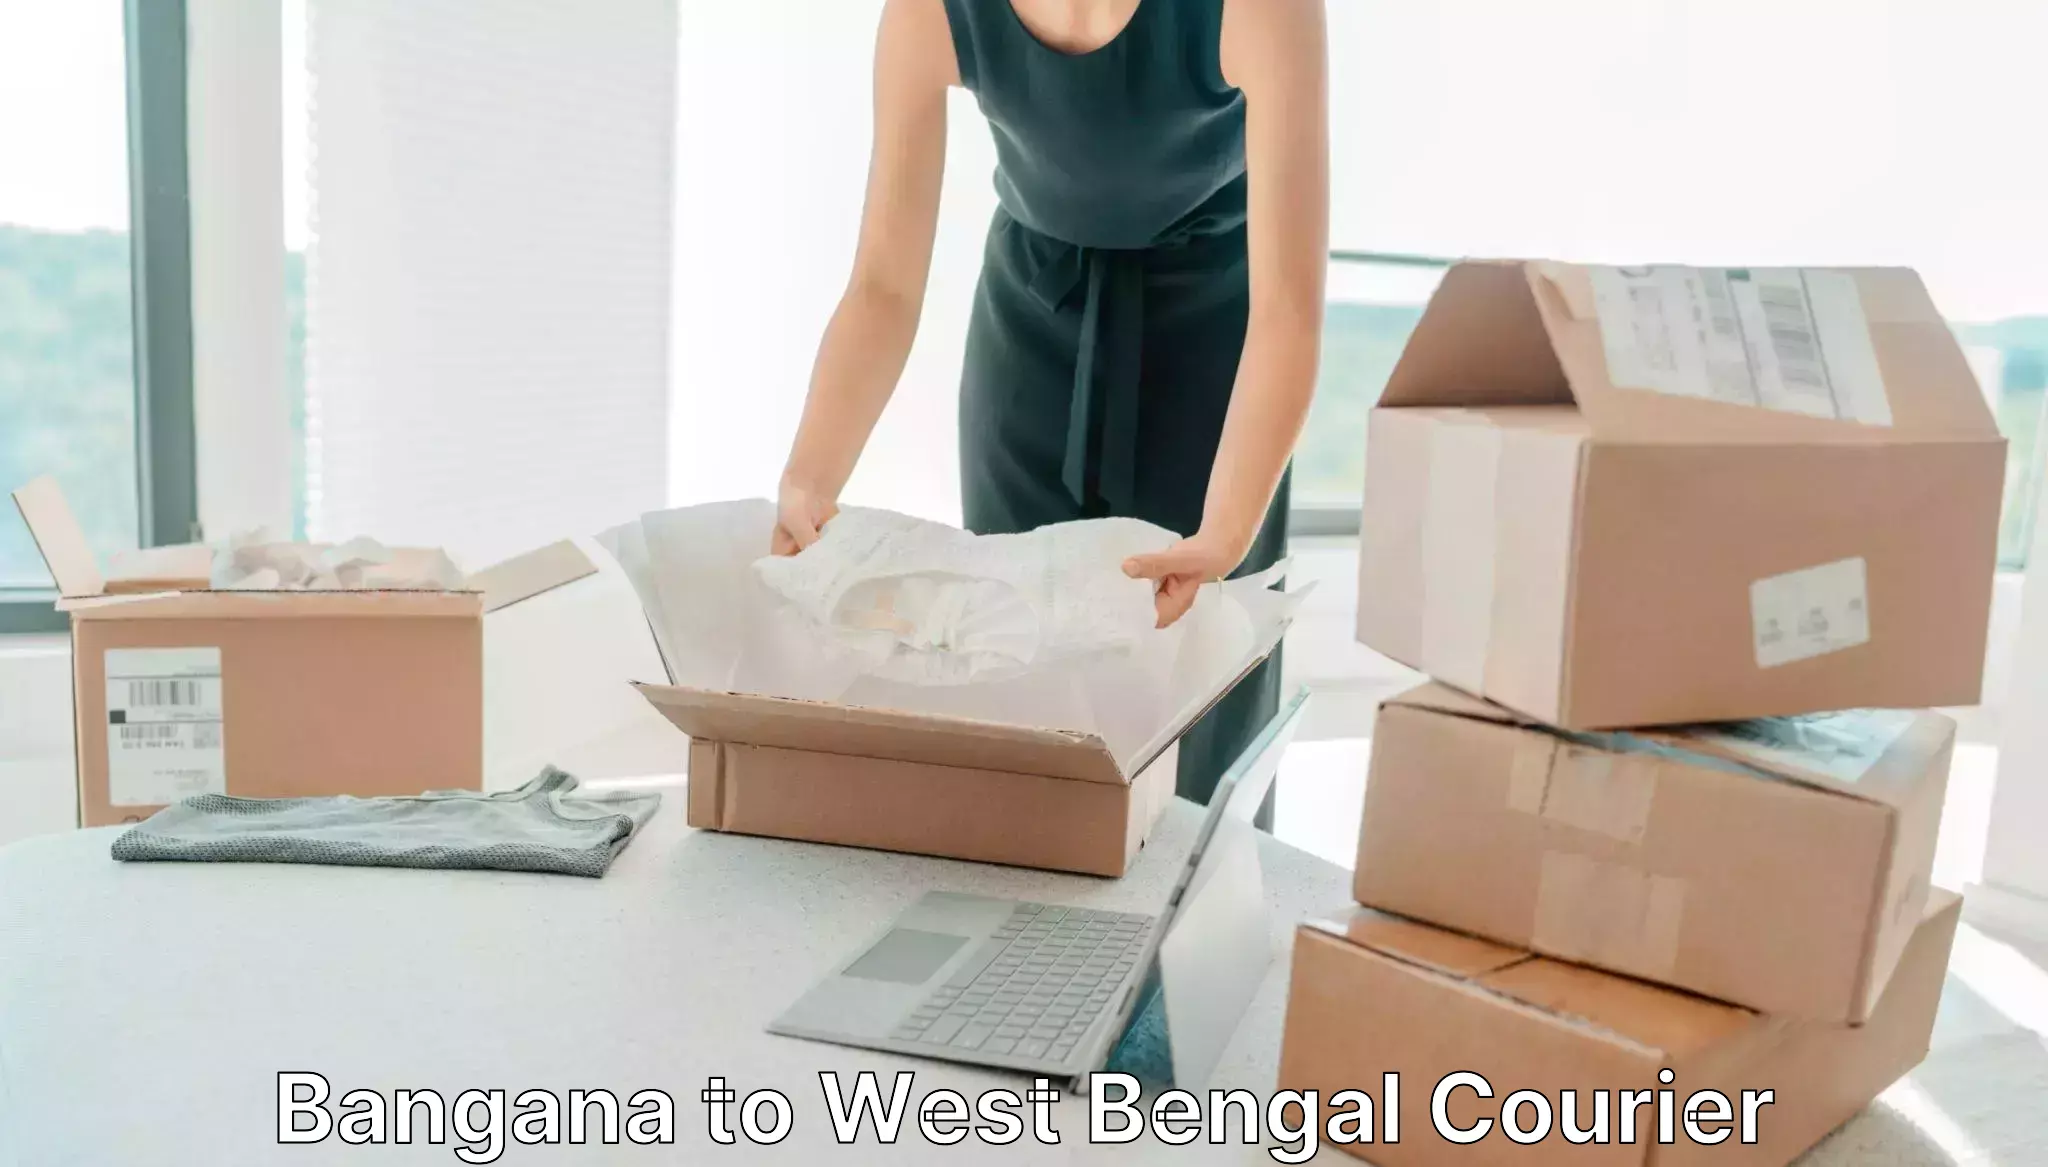 Logistics service provider Bangana to Kolkata Port